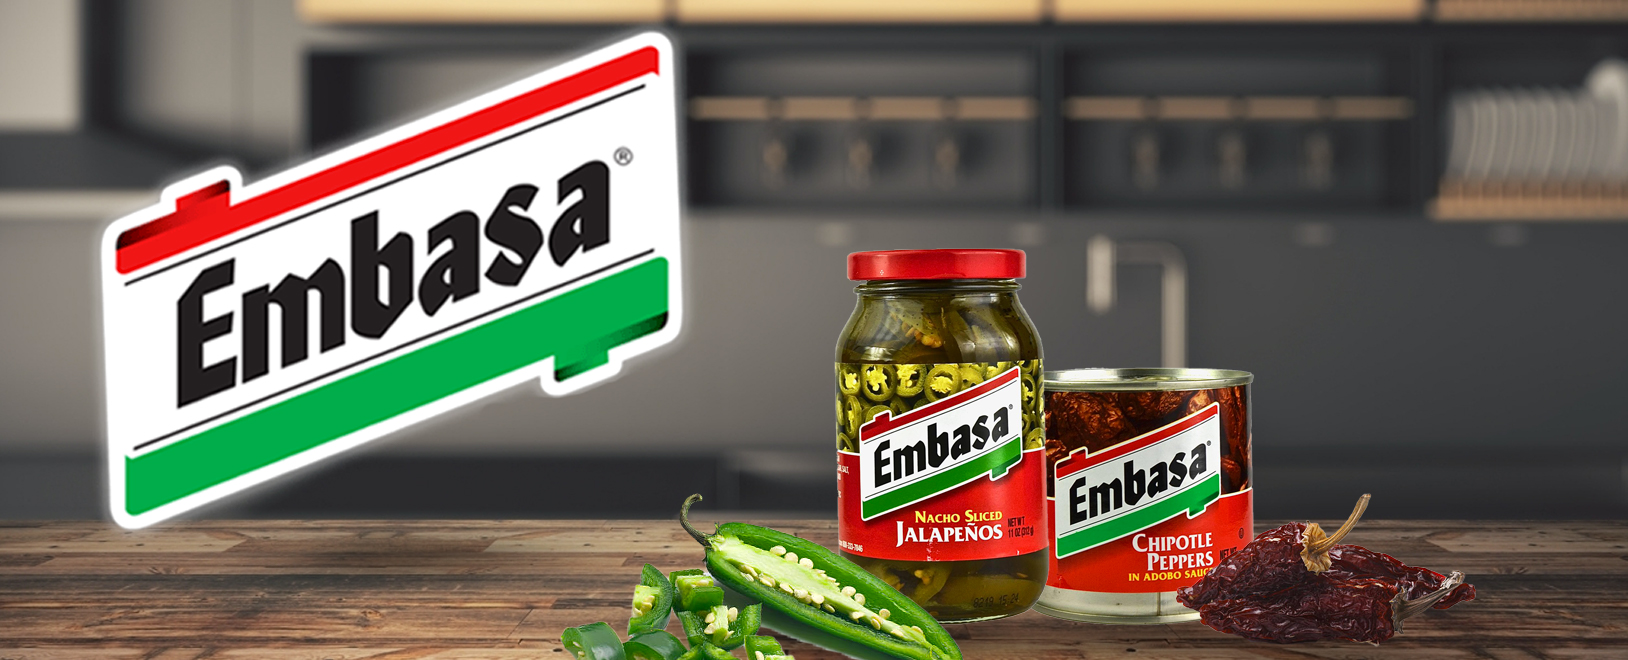 Les produits Embasa